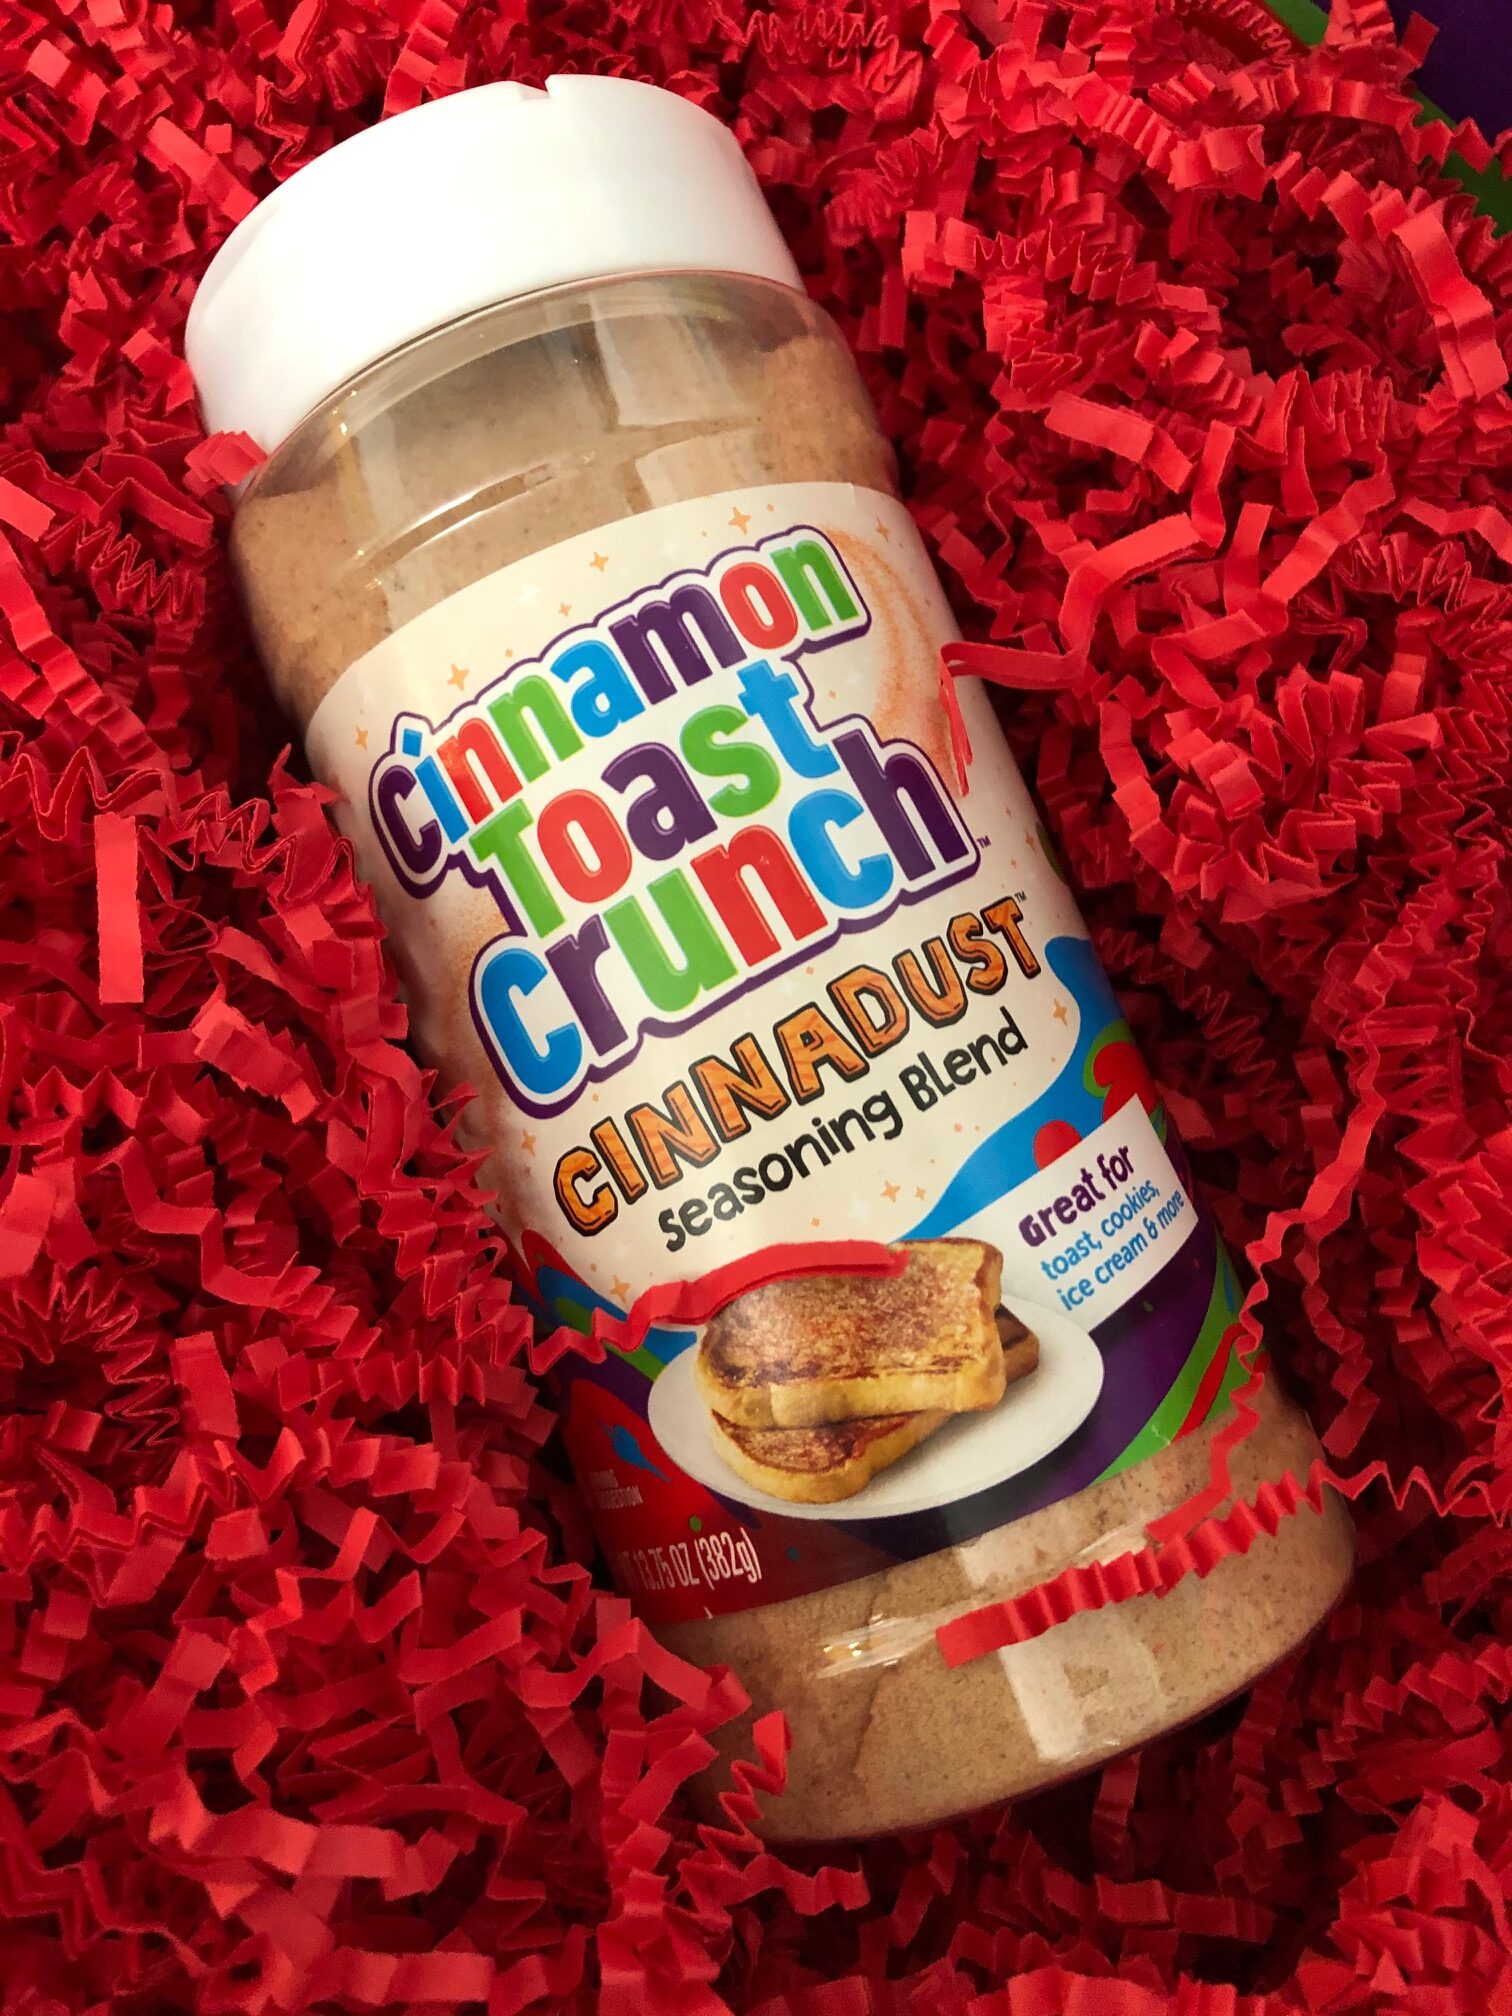 REVIEW: Cinnamon Toast Crunch Cinnadust Seasoning Blend - The